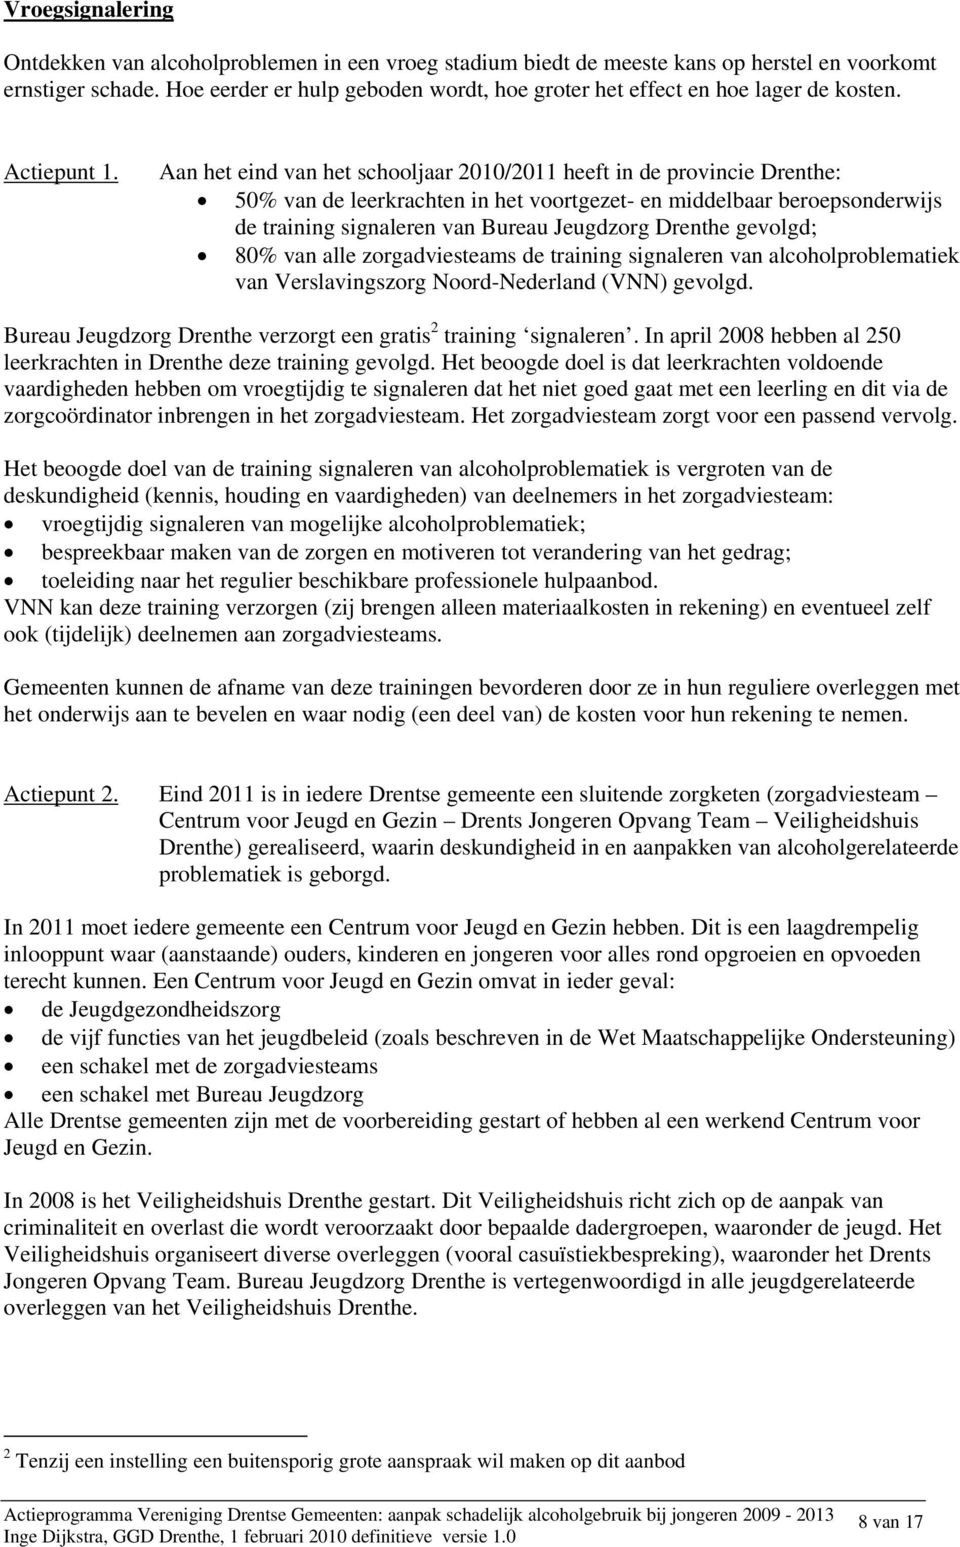 Aan het eind van het schooljaar 2010/2011 heeft in de provincie Drenthe: 50% van de leerkrachten in het voortgezet- en middelbaar beroepsonderwijs de training signaleren van Bureau Jeugdzorg Drenthe